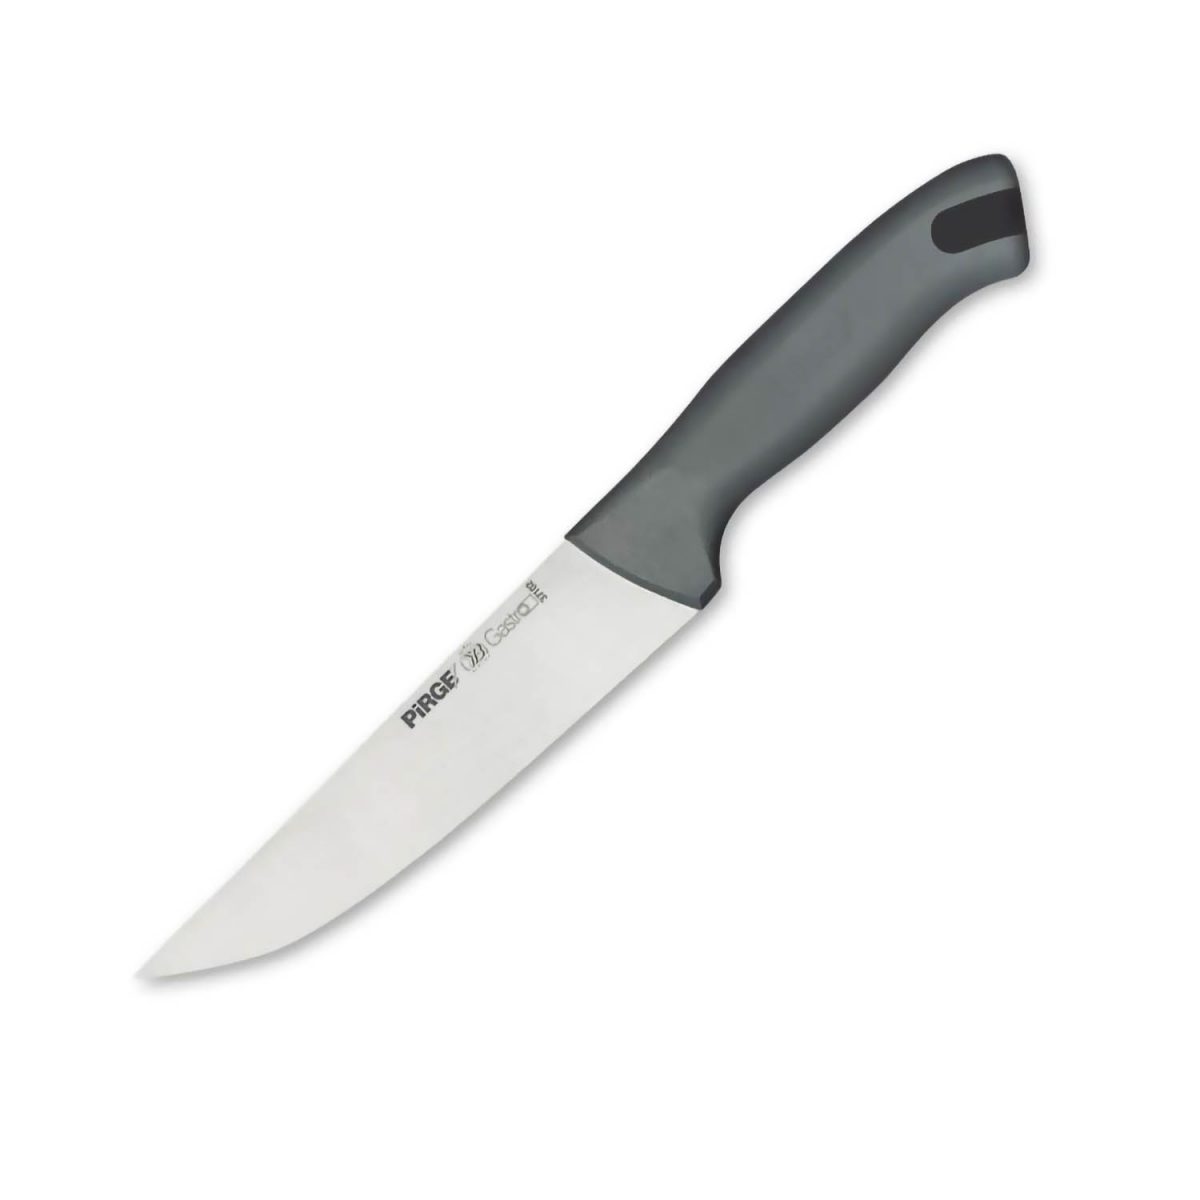 Pirge Gastro Kasap Bıçağı No.2 16,5 cm - 37102 PRG 37102